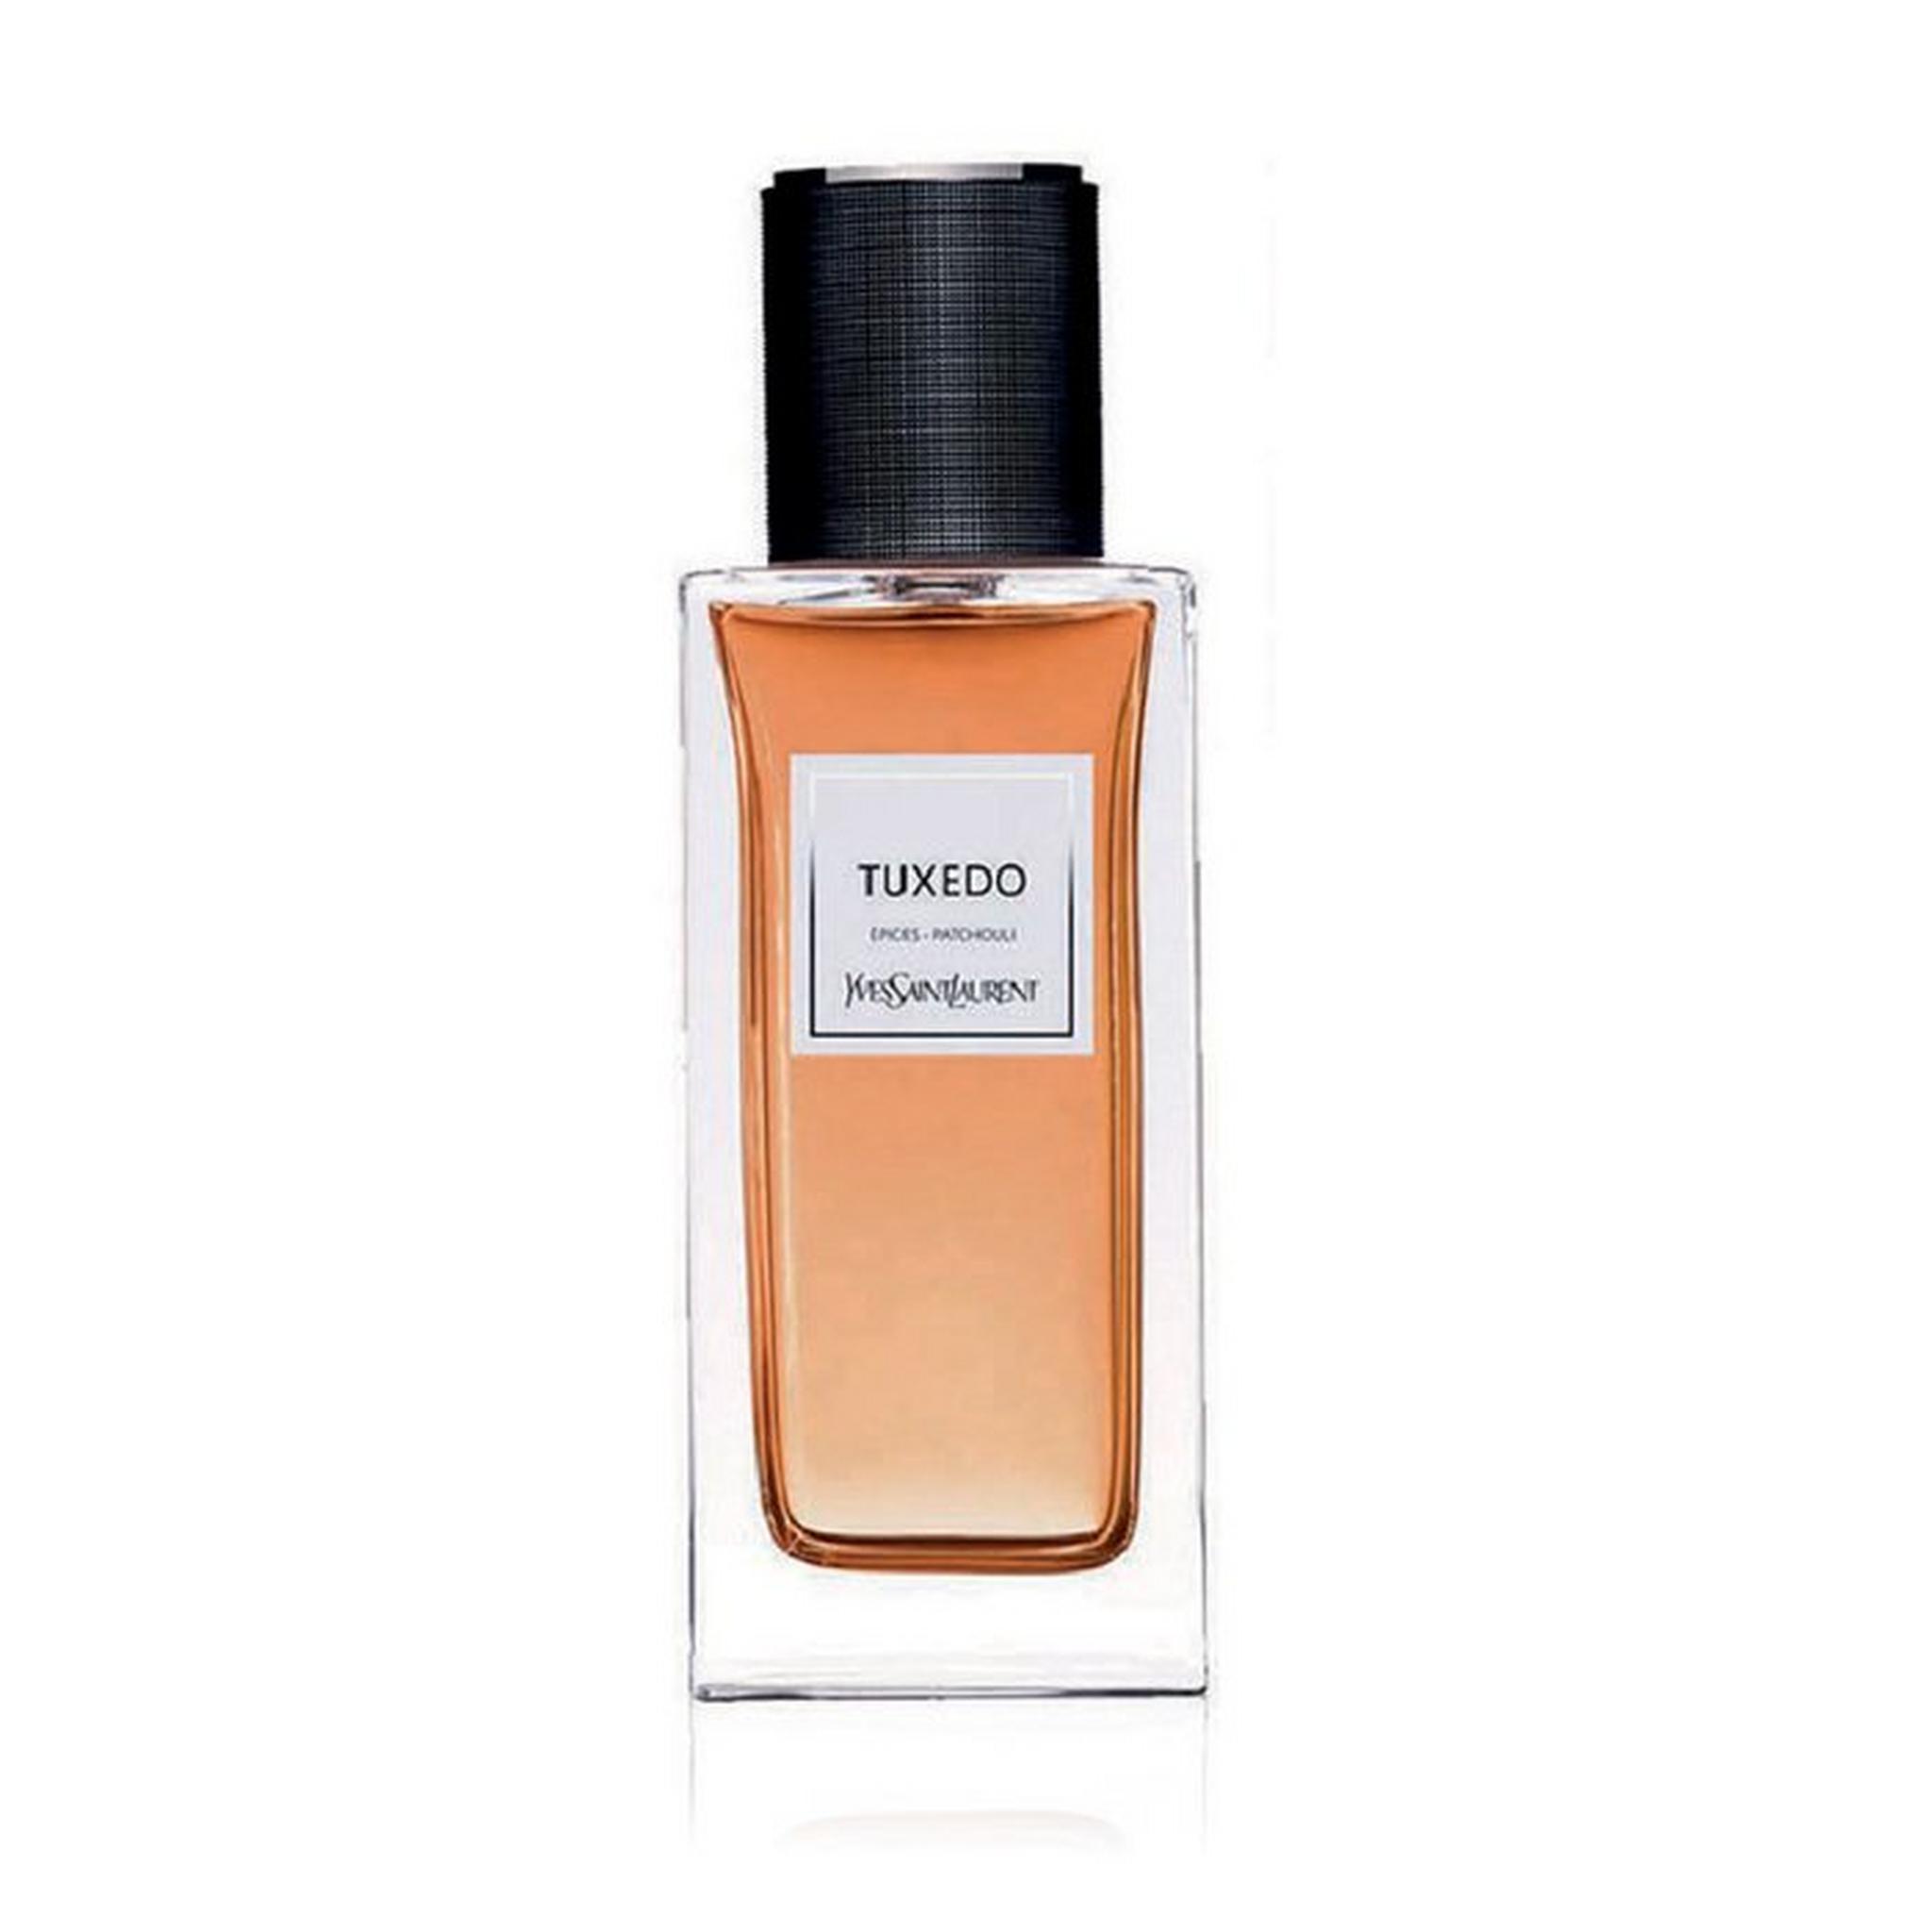 YSL Tuxedo Epices Patchouli Unisex Perfume - Eau De Perfume, 125ml